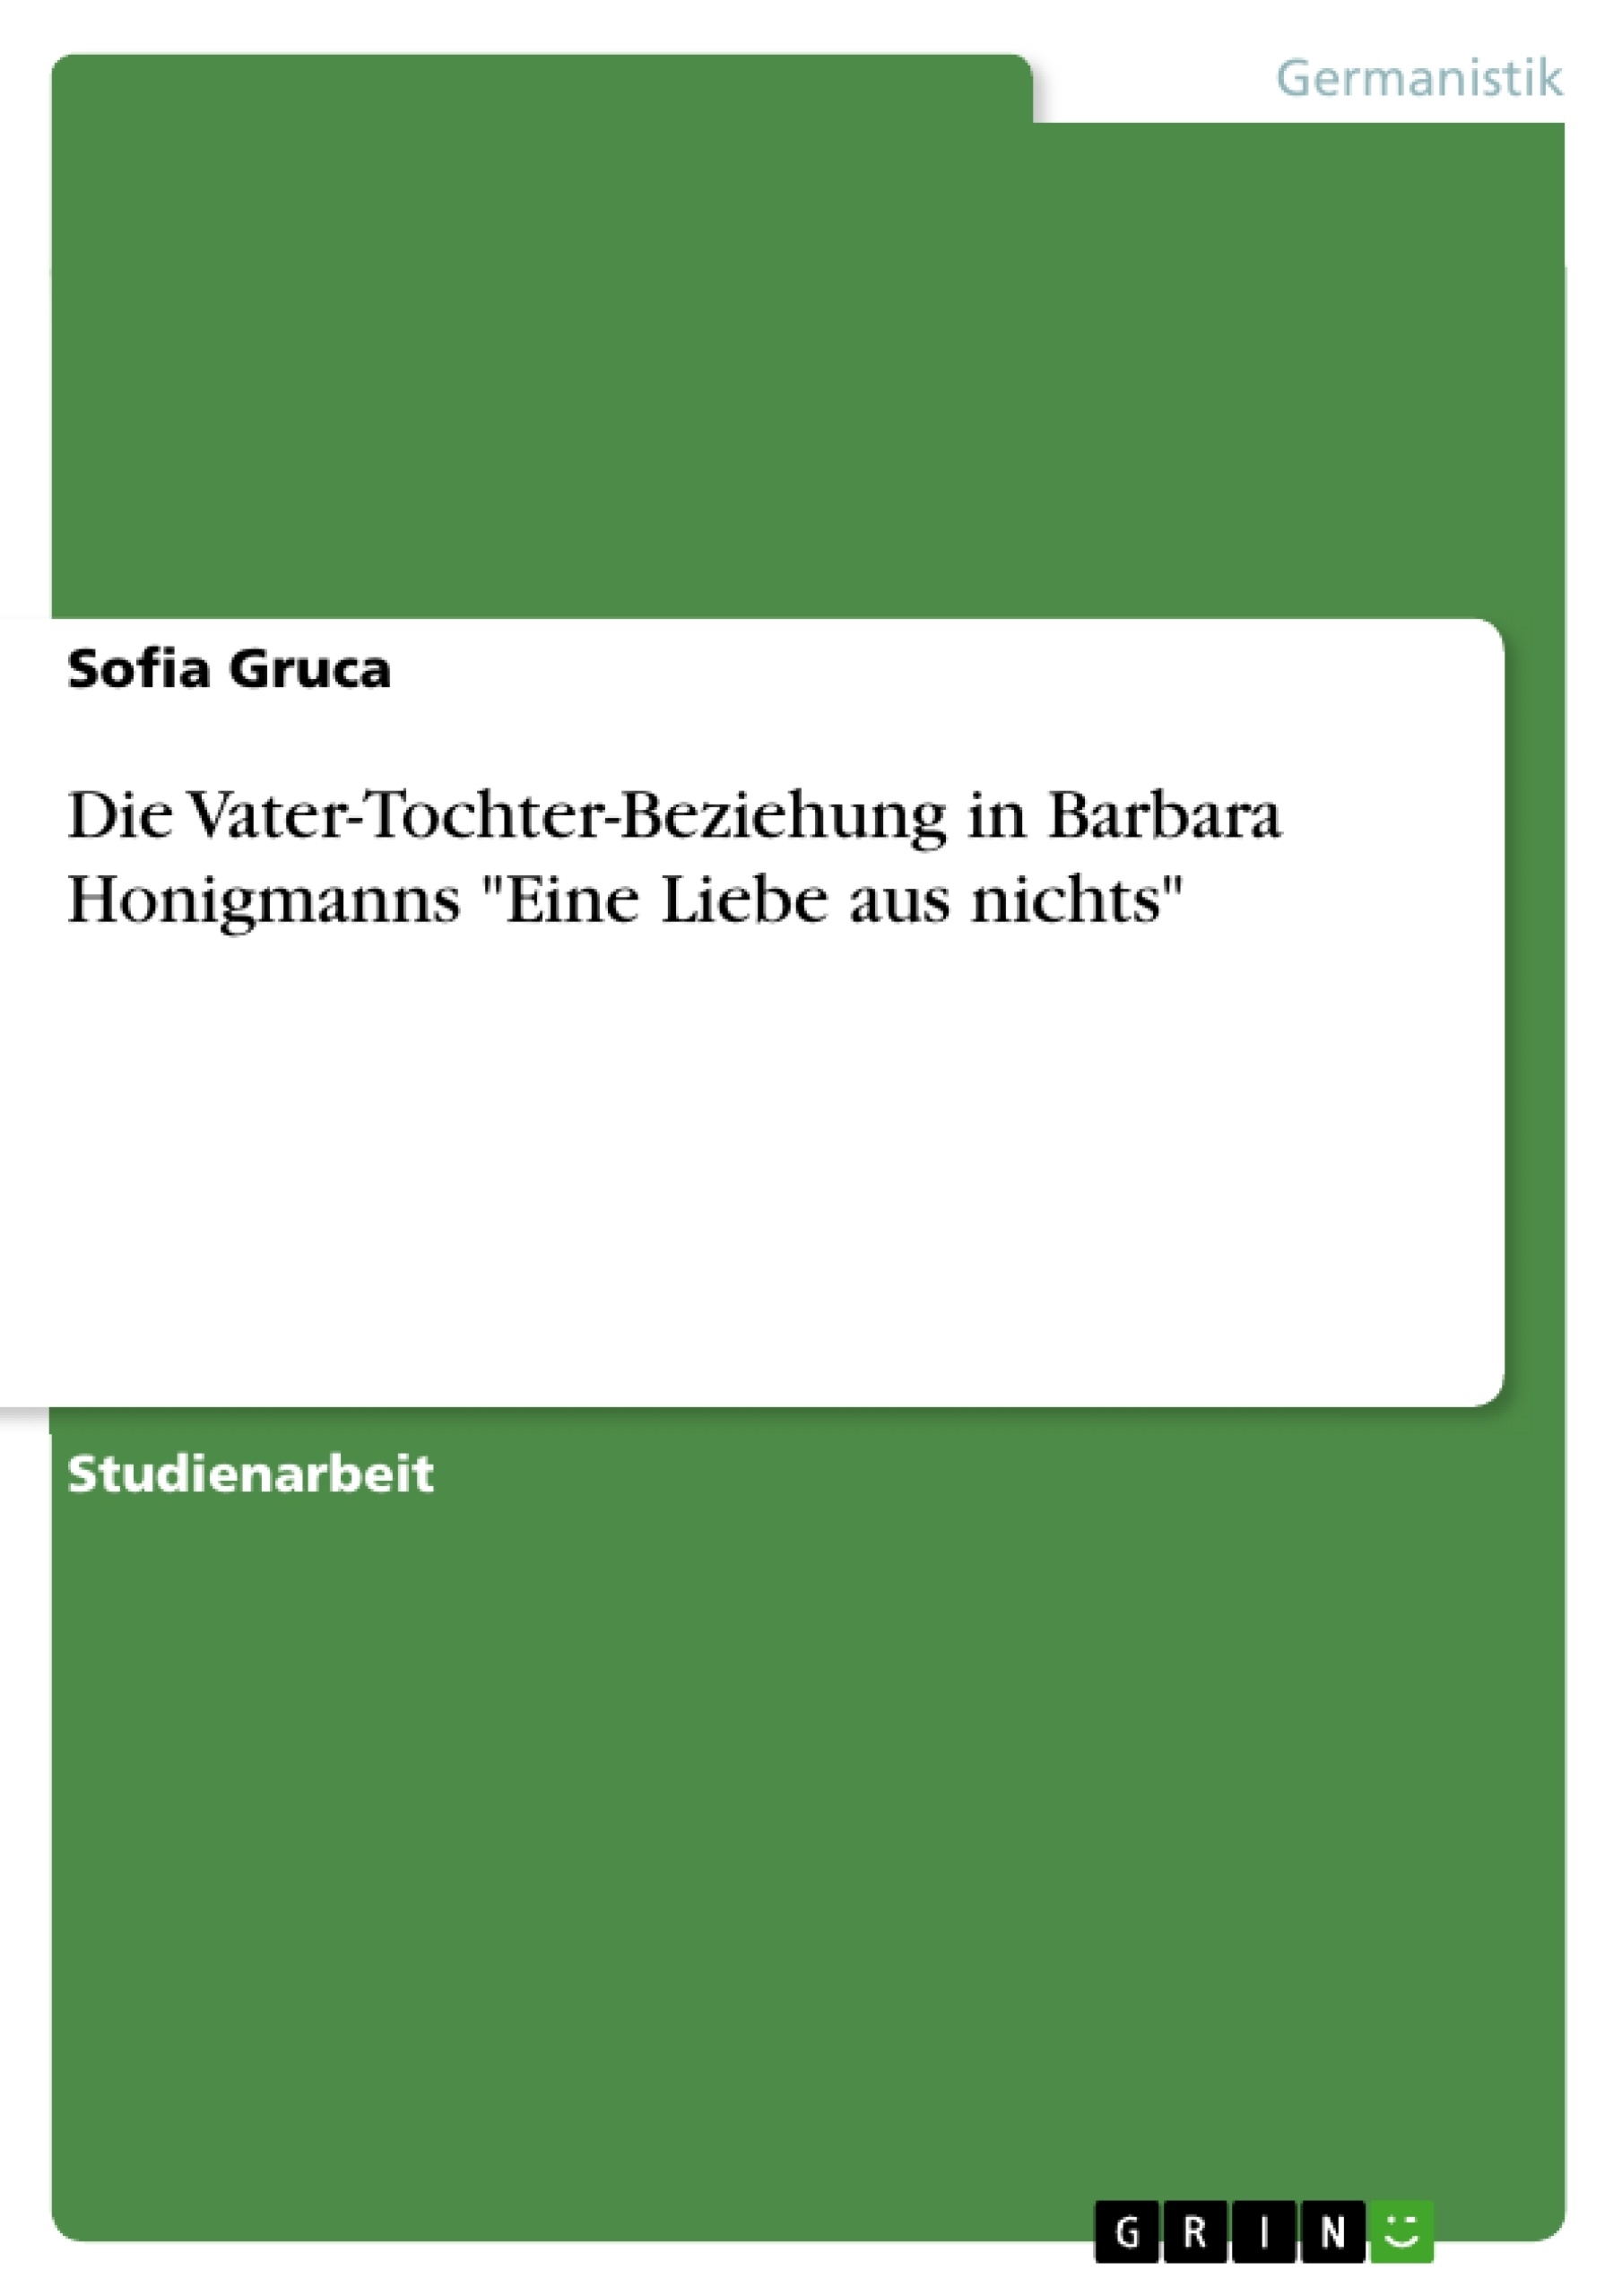 Titre: Die Vater-Tochter-Beziehung in Barbara Honigmanns "Eine Liebe aus nichts"